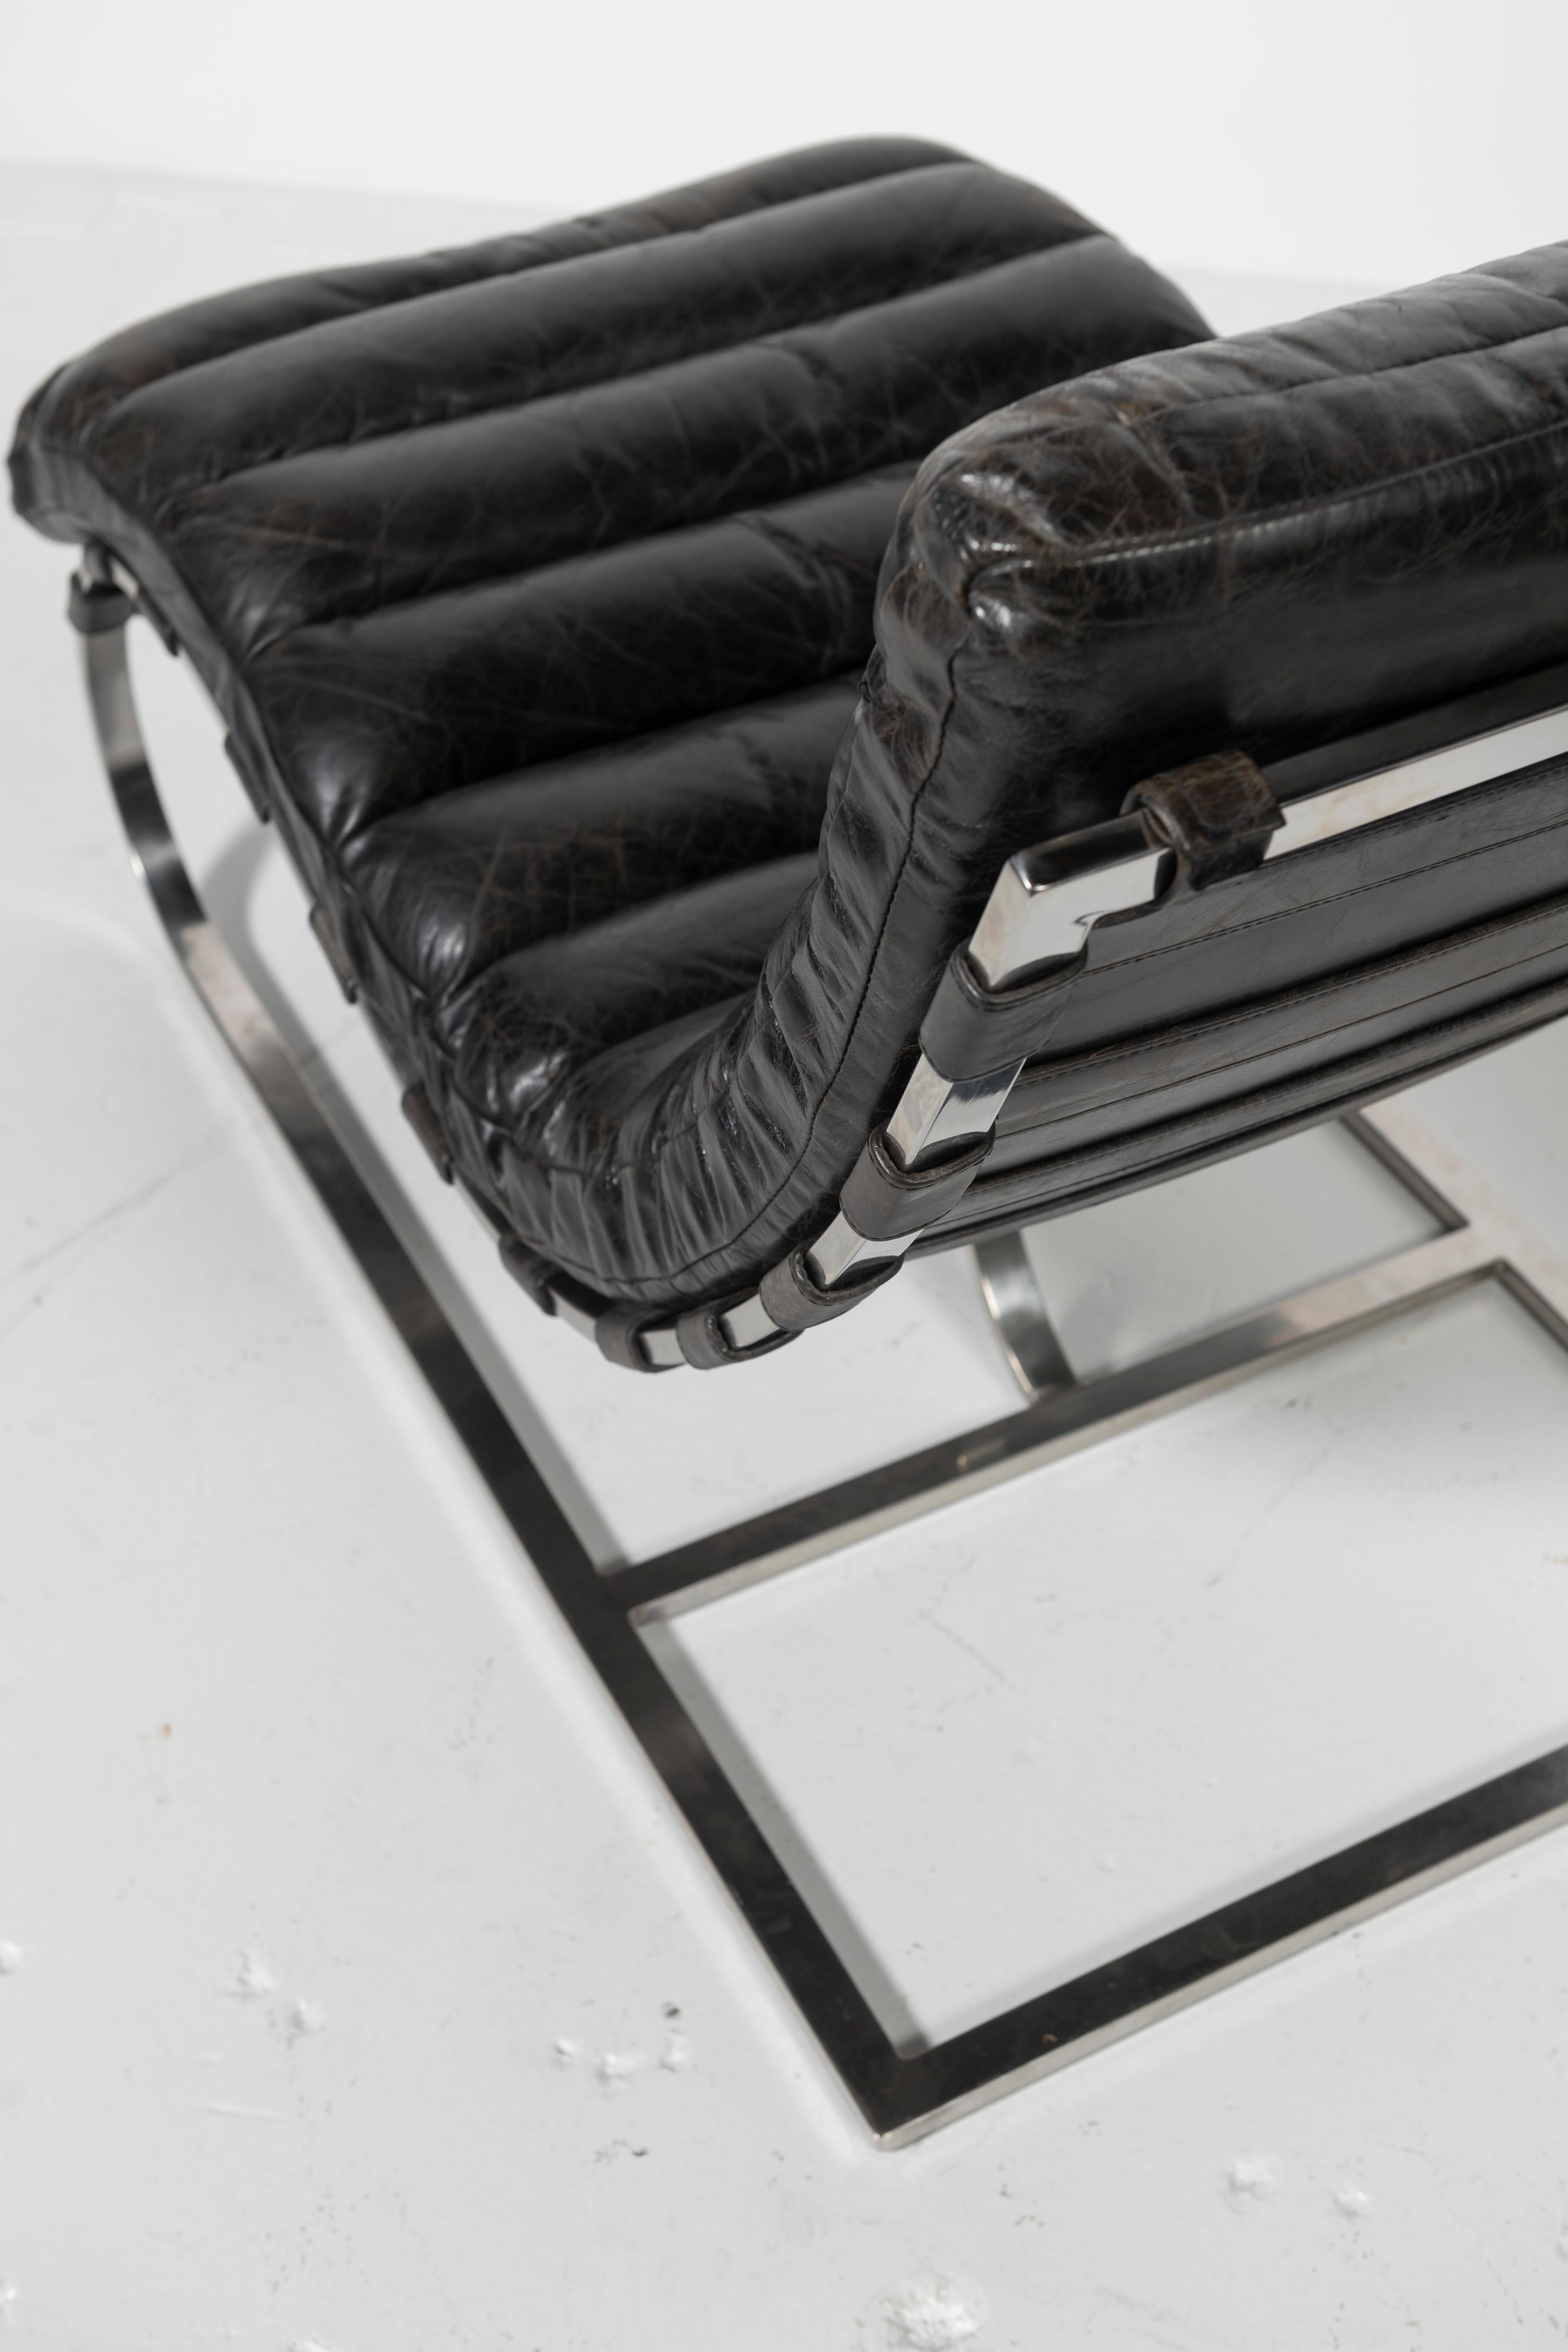 Paire de chaises longues en cuir noir magnifiquement usées, attribuées au designer français Michel Boyer. Les coussins en cuir cannelé flottent sur un cadre en chrome poli avec des sangles en cuir. Ces chaises de collection allient design classique